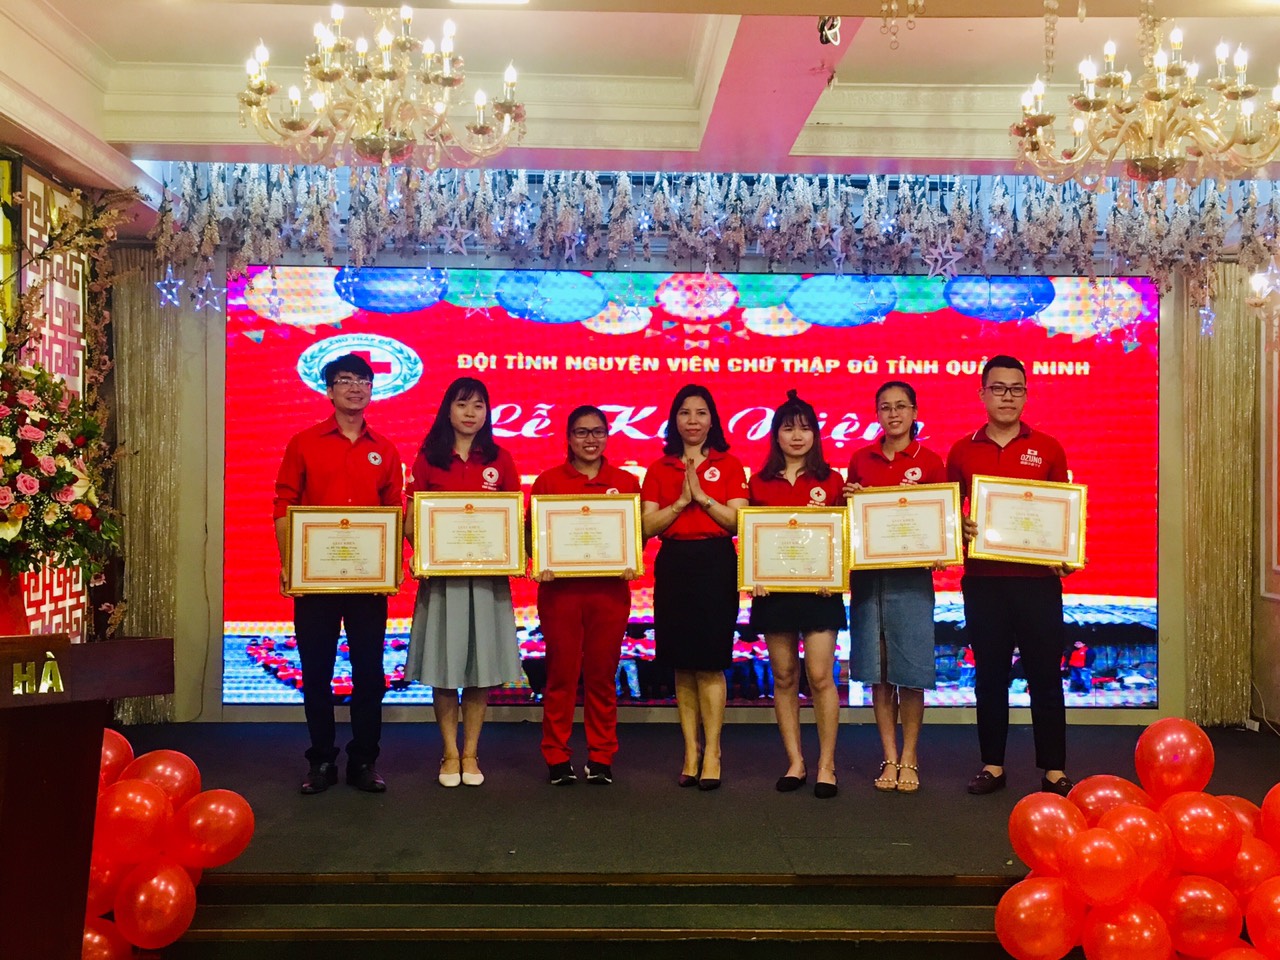 Các tình nguyện viên có thành tích xuất sắc được nhận bằng khen của Hội chữ thập đỏ tỉnh Quảng Ninh.